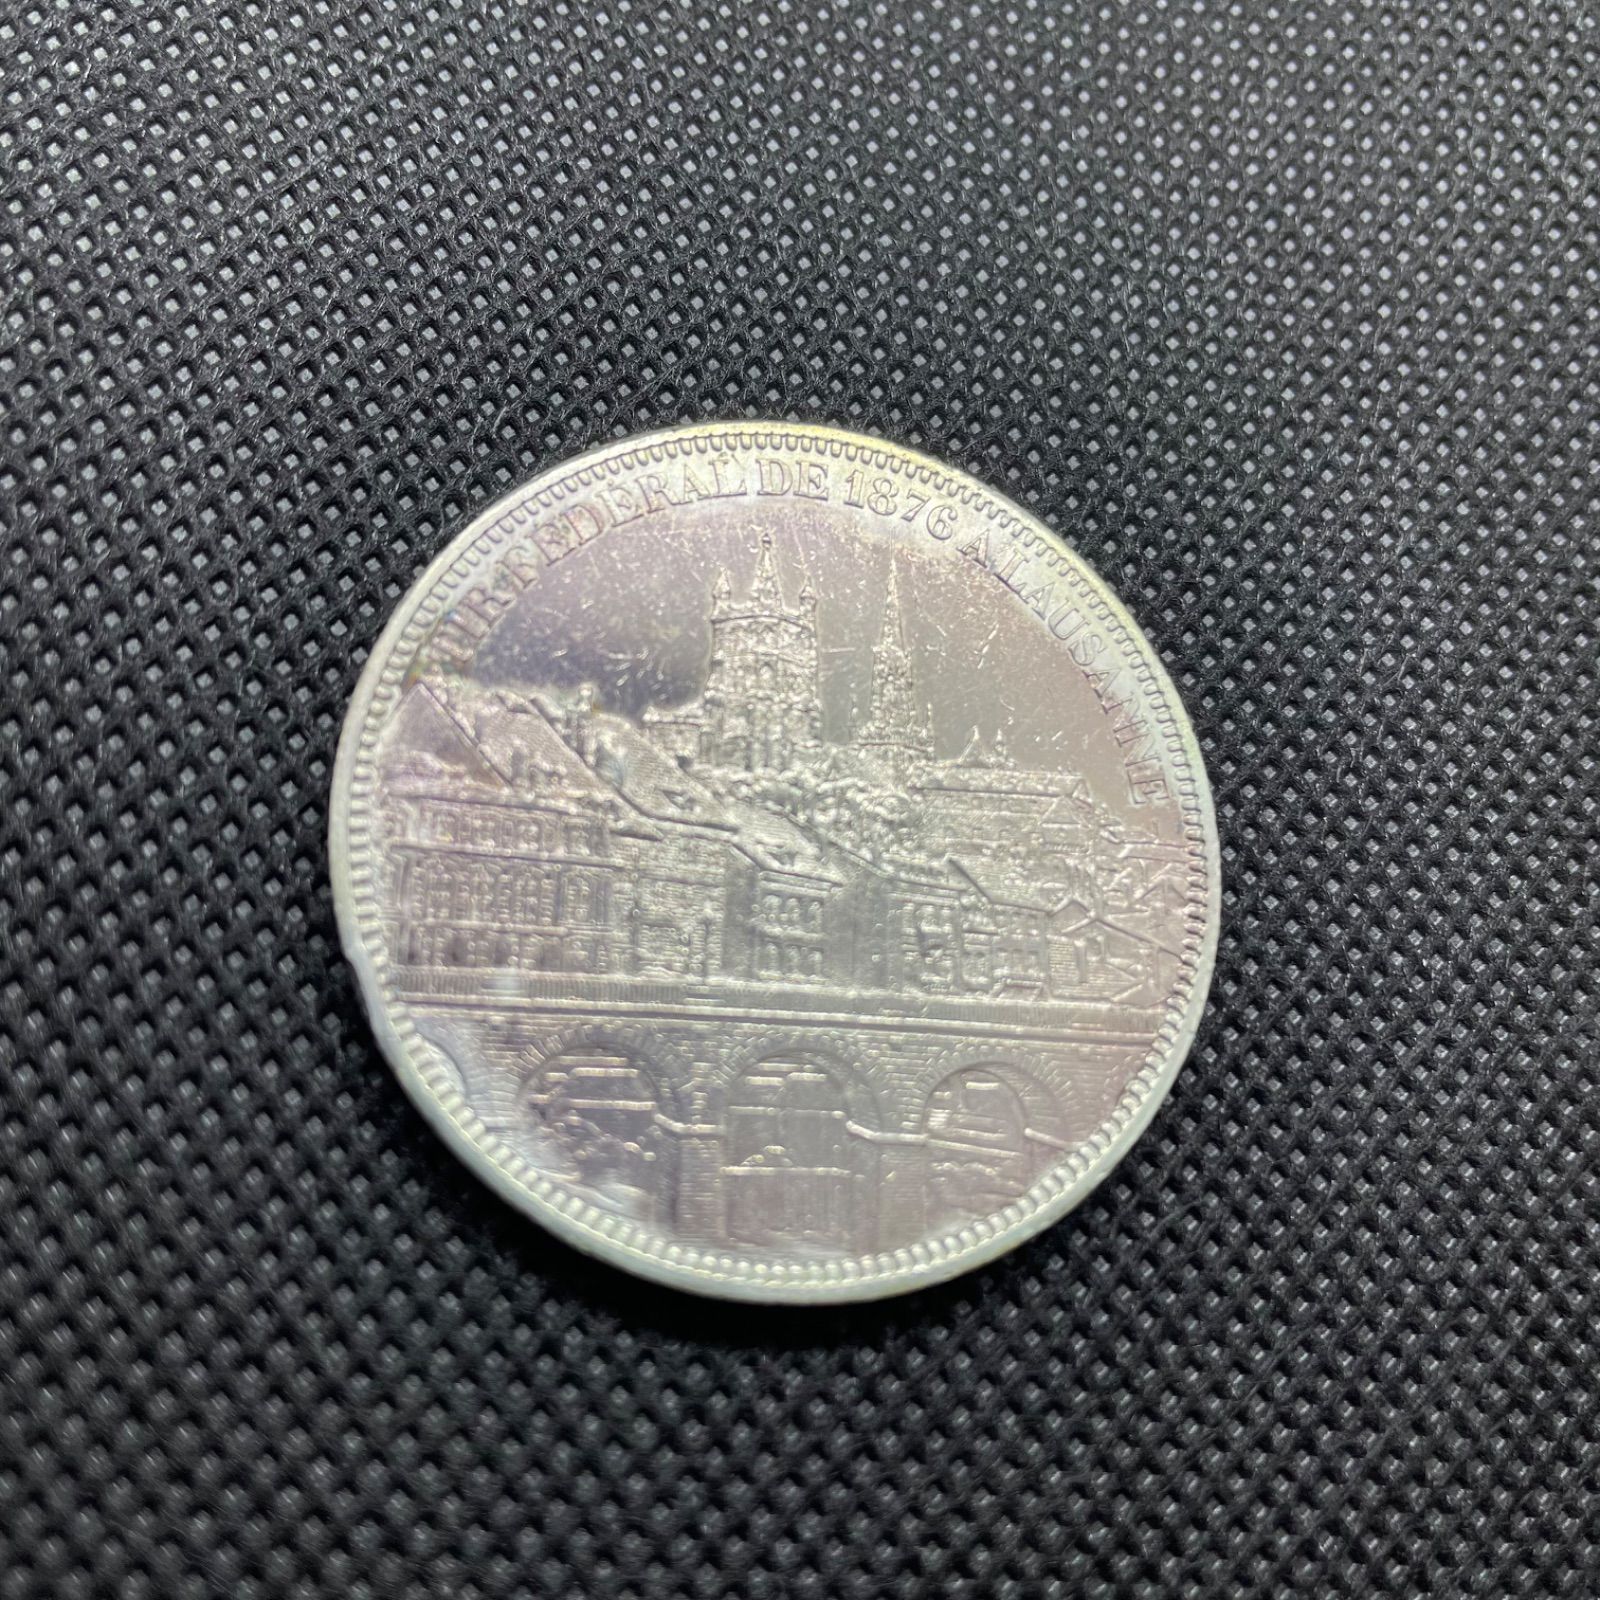 スイス 射撃祭記念 5フラン 銀貨 古銭 コイン 貨幣 外国銭 外国コイン